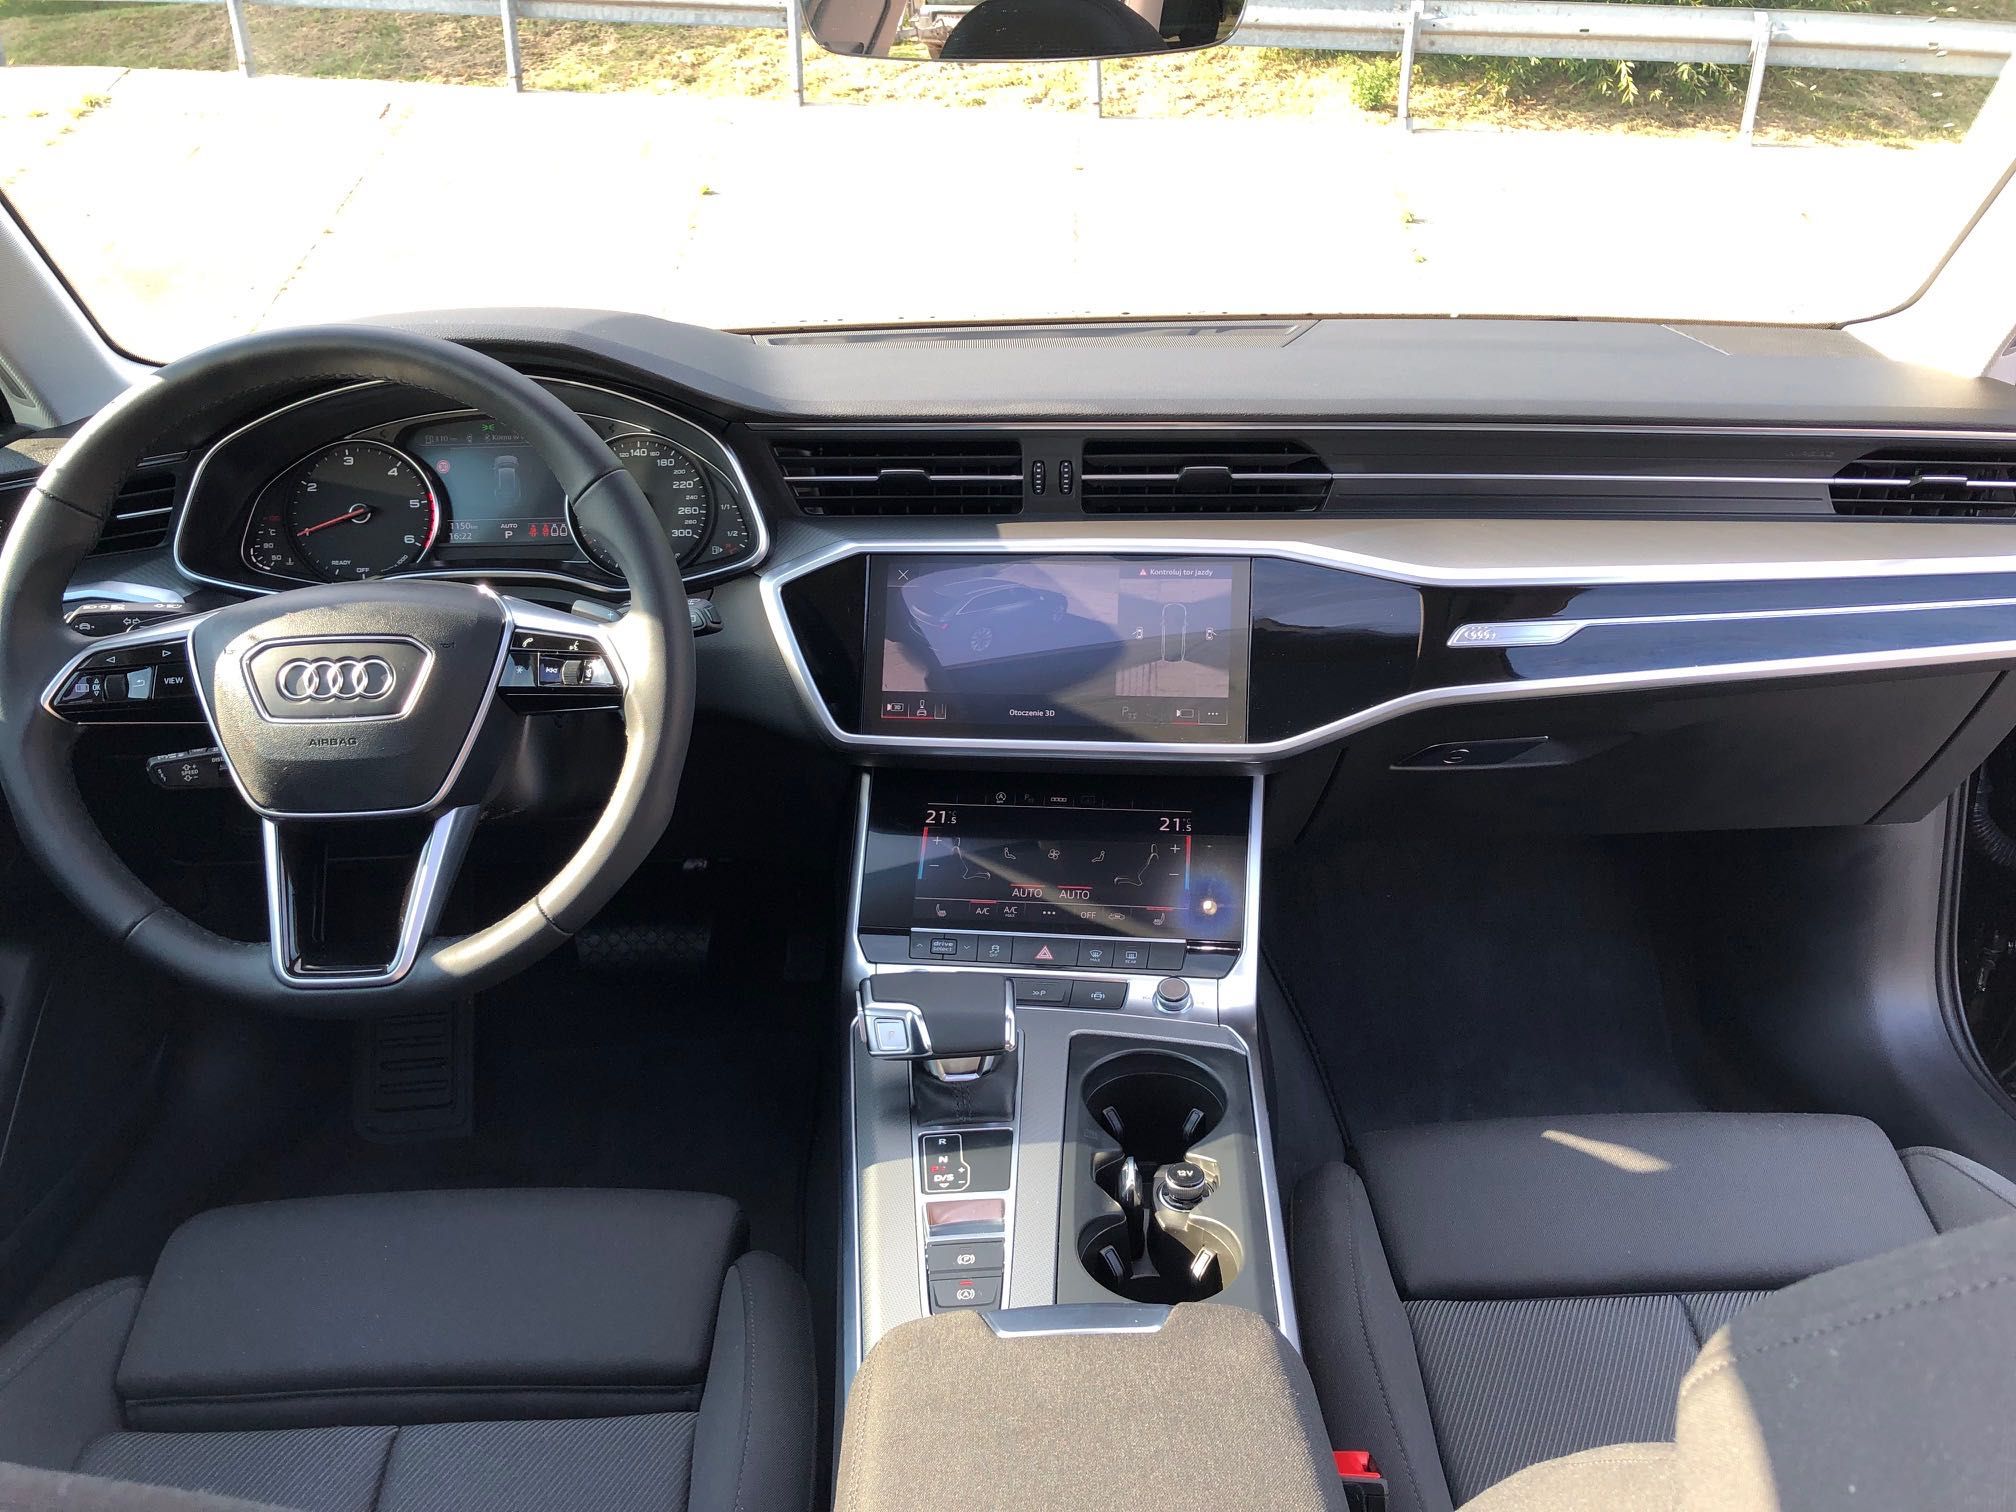 Audi A6 40 TDI na wynajem długoterminowy - Cena promocyjna